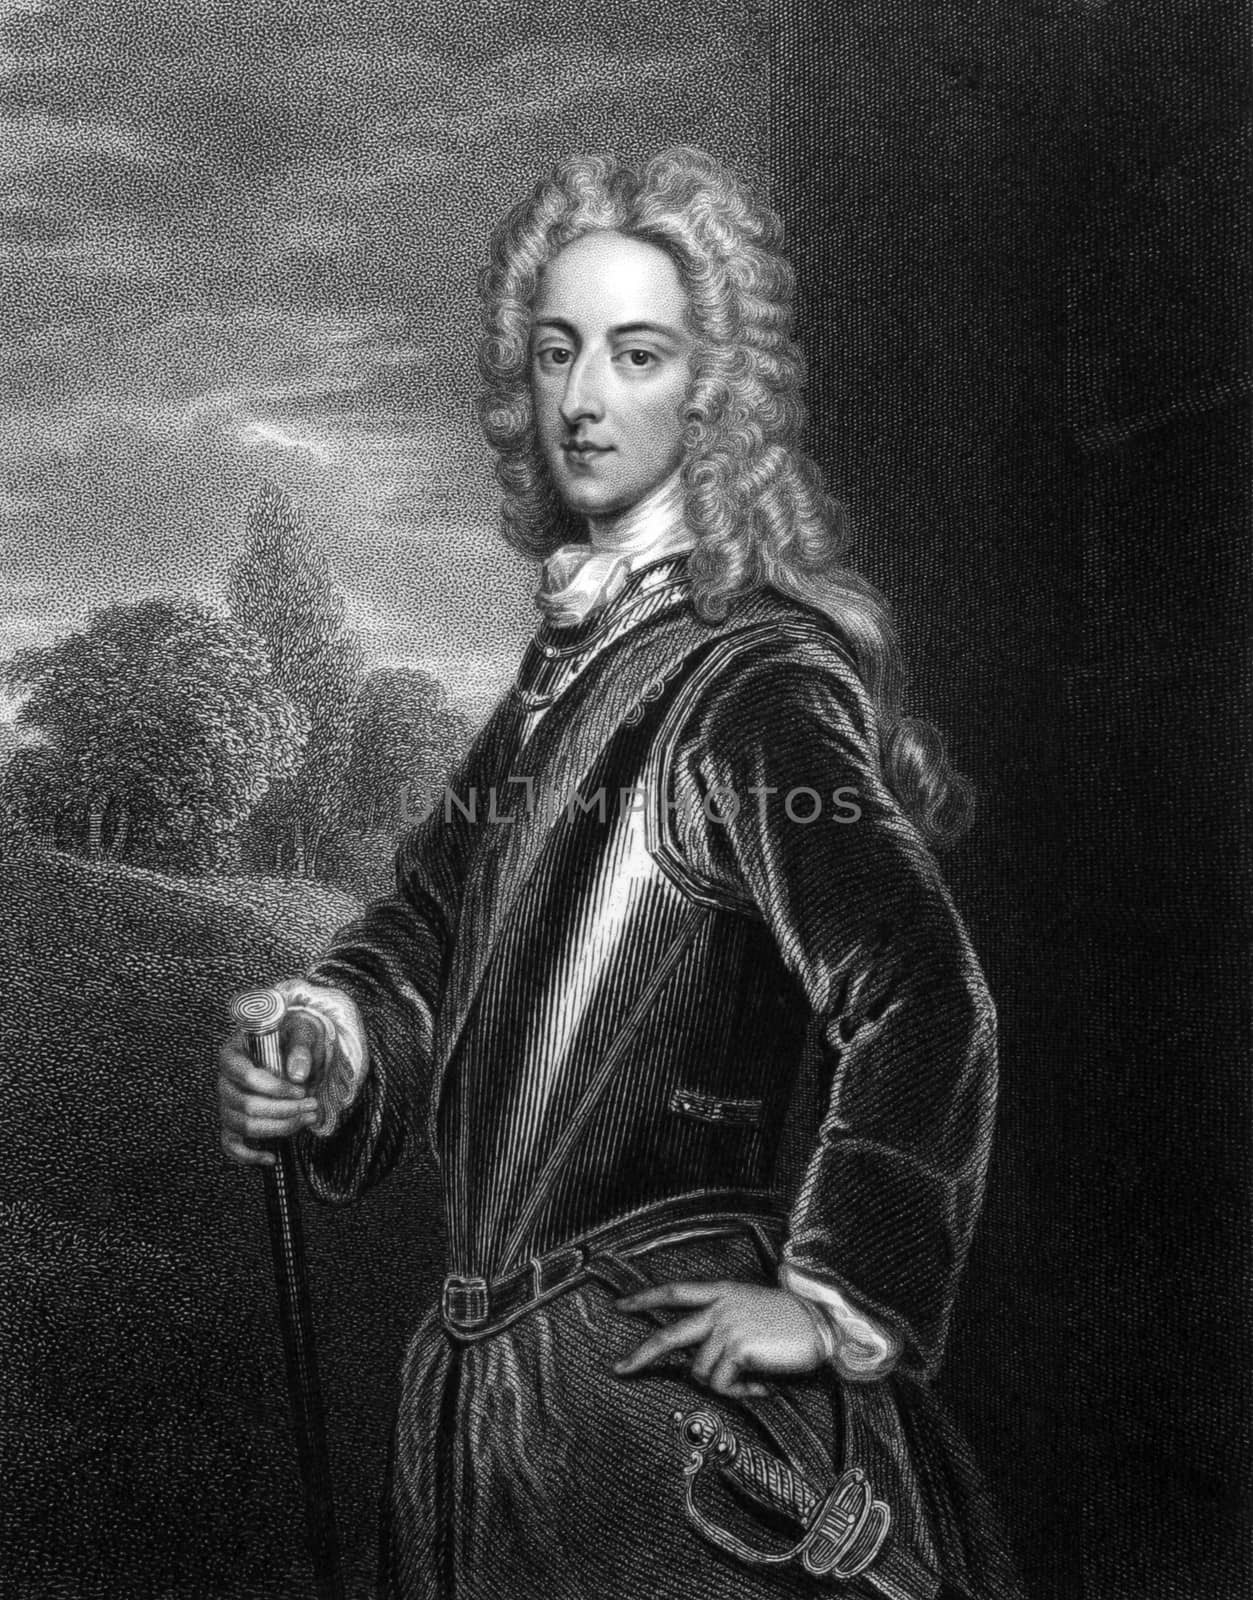 John Montagu, 2nd Duke of Montagu by Georgios